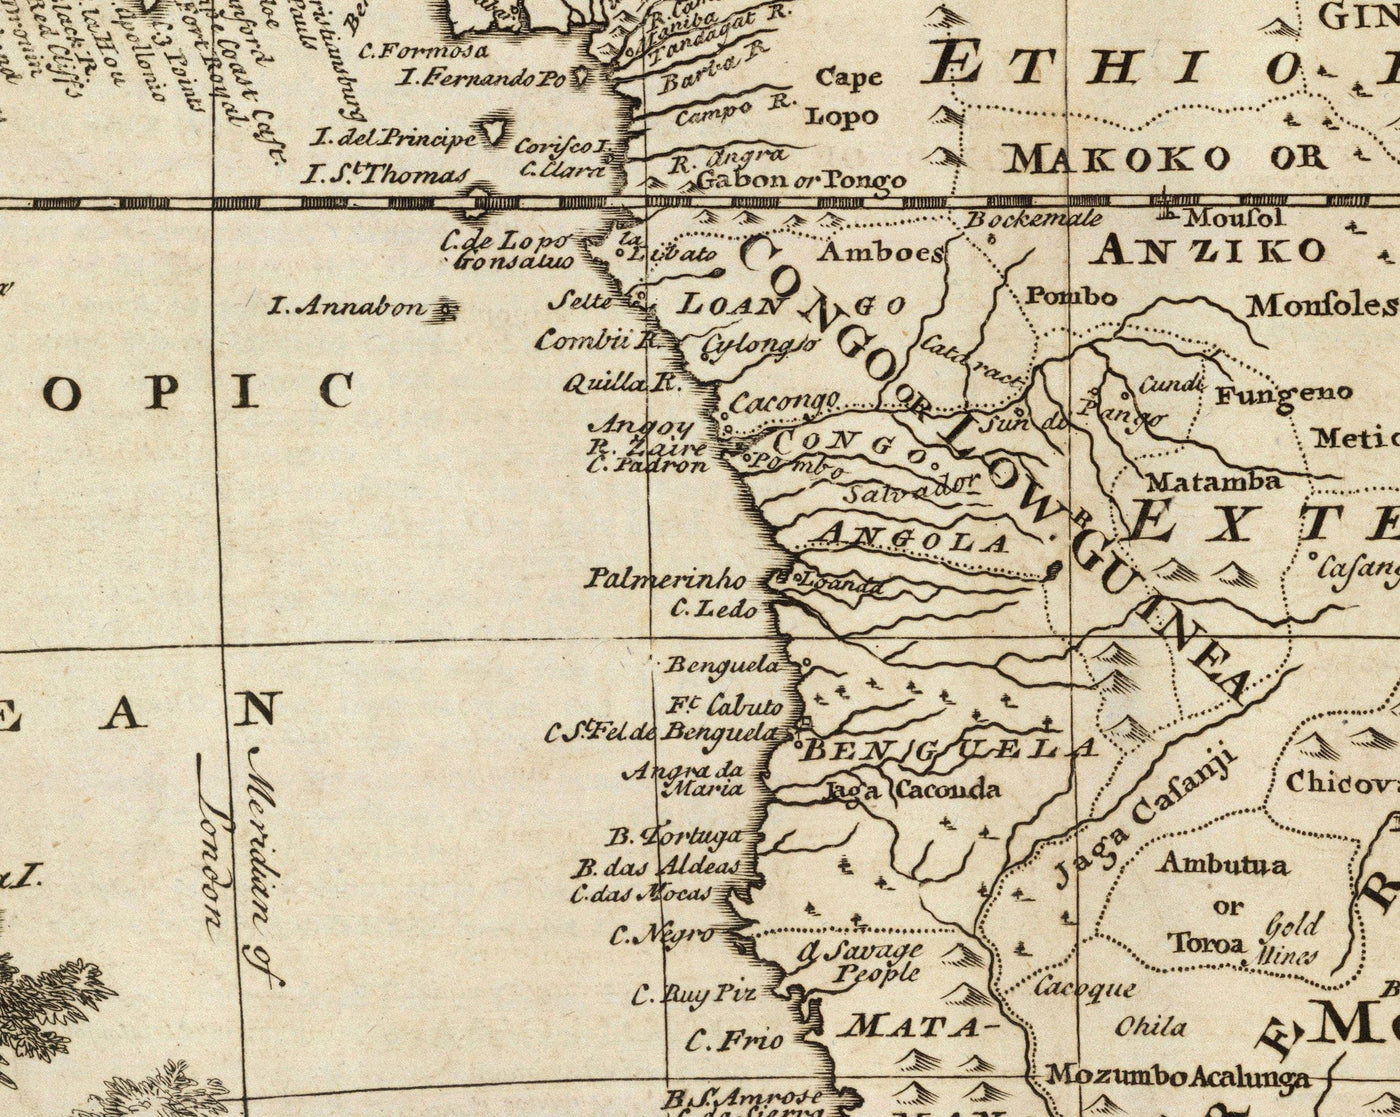 Viejo Mapa de África, 1747 por Emanuel Bowen - Pre-Colonial - Comercio de esclavos, Negroland, Etiopía, Barbaria, Nubia